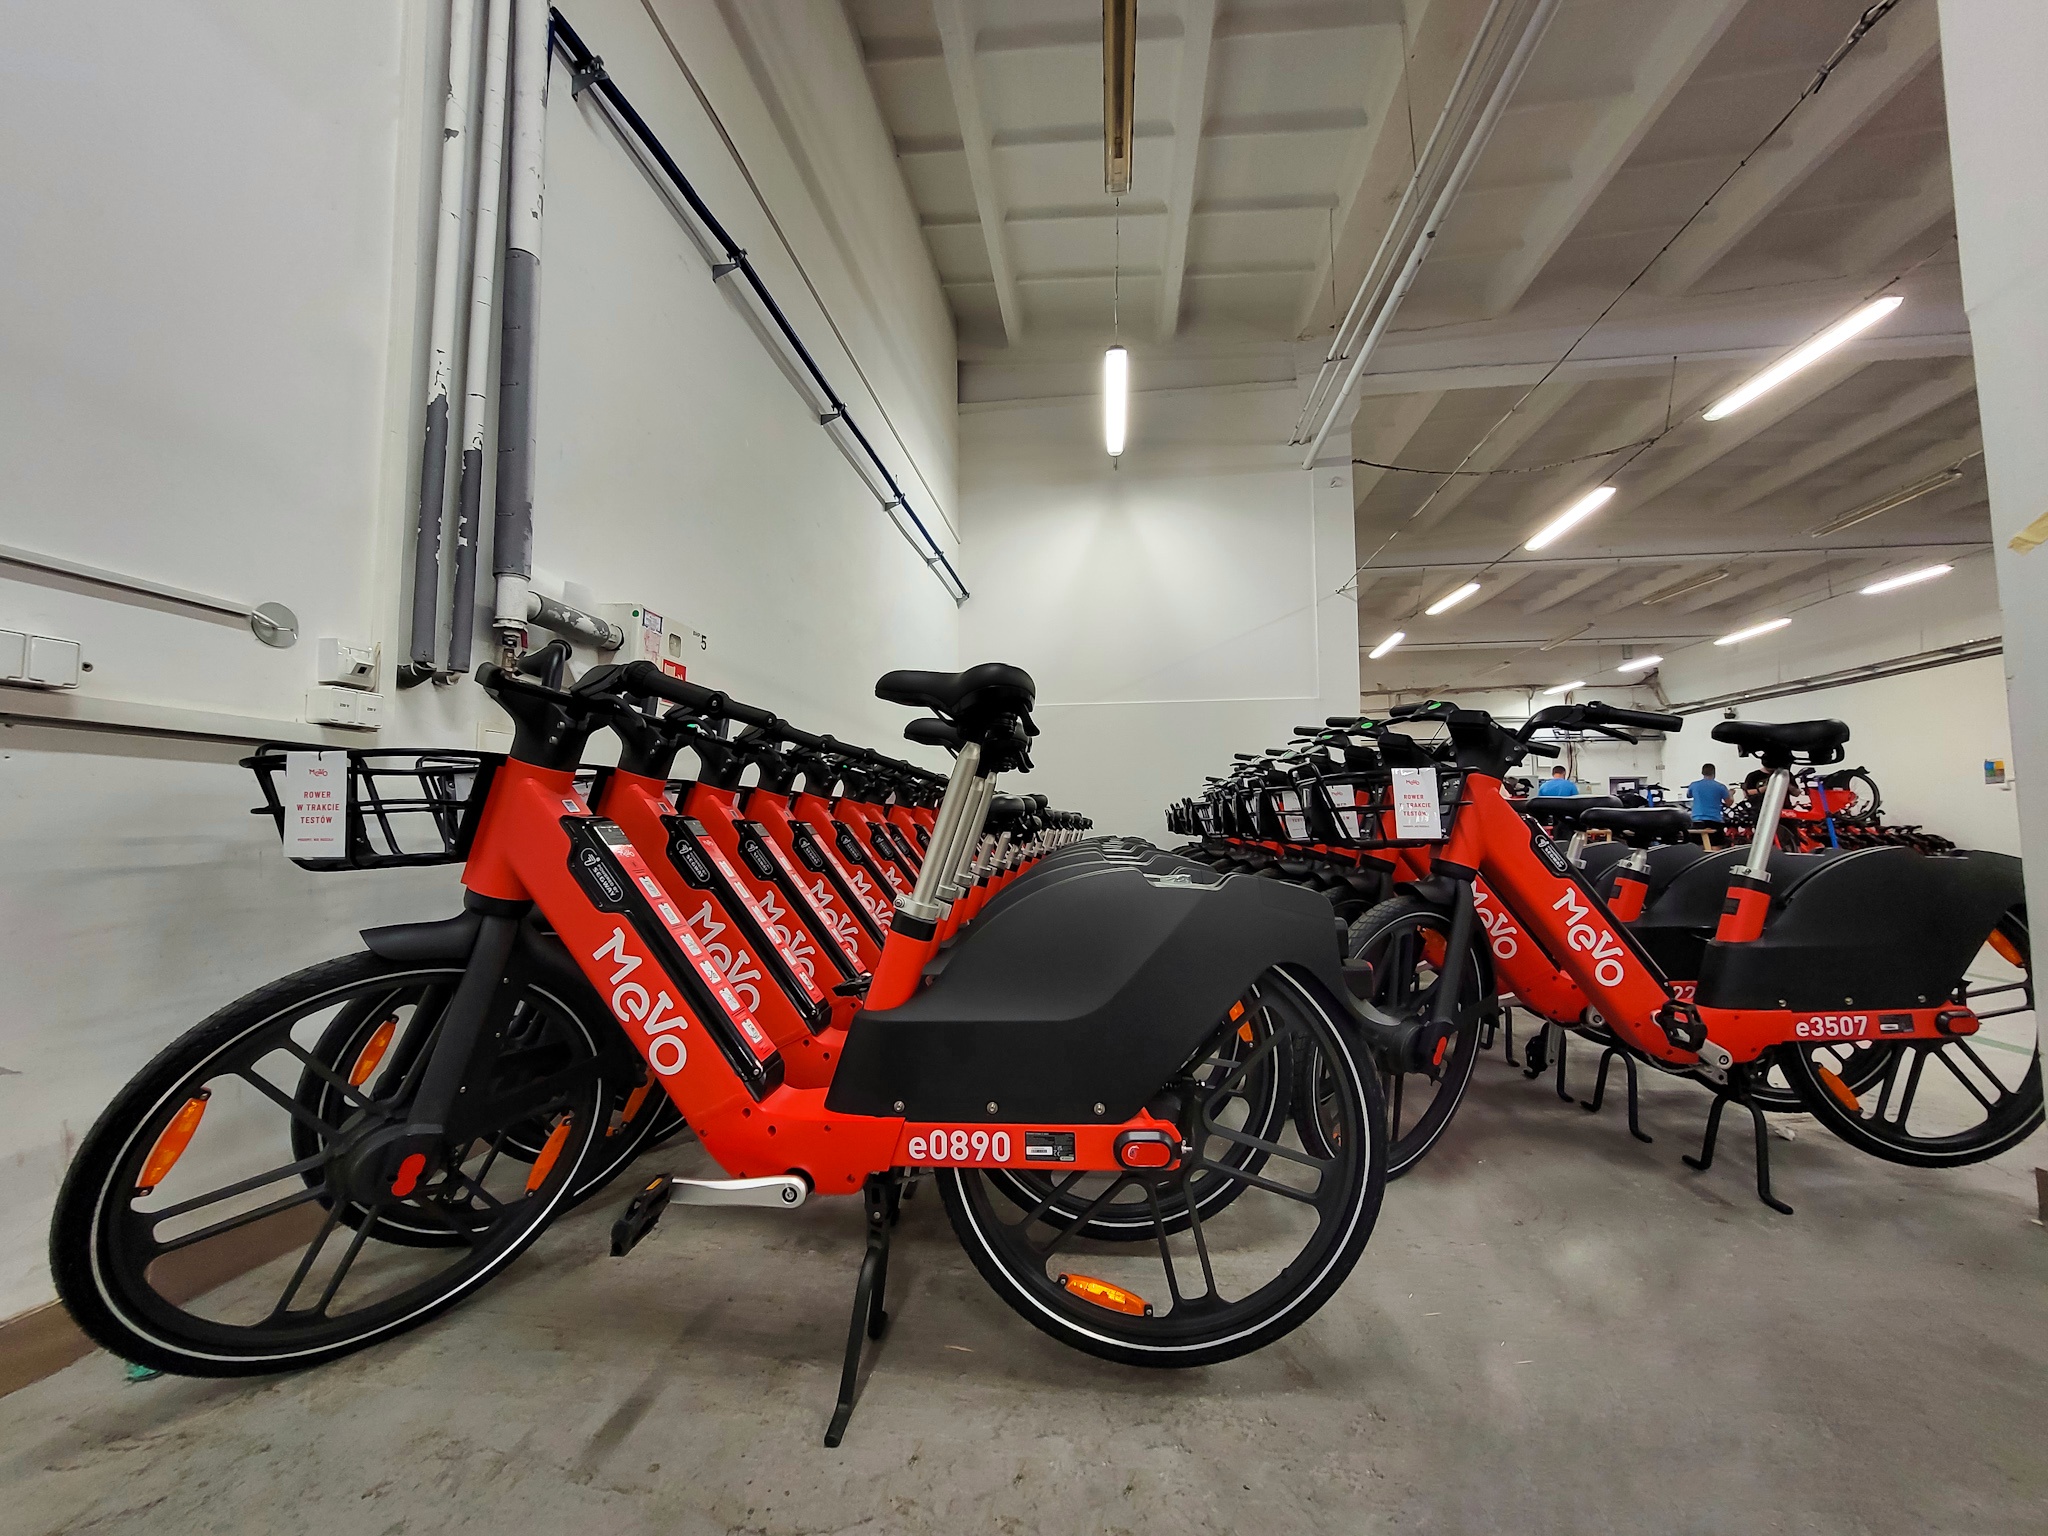 Kilkadziesiąt czerwonych rowerów mevo, ustawione w równym szeregu, w środku hali magazynowej